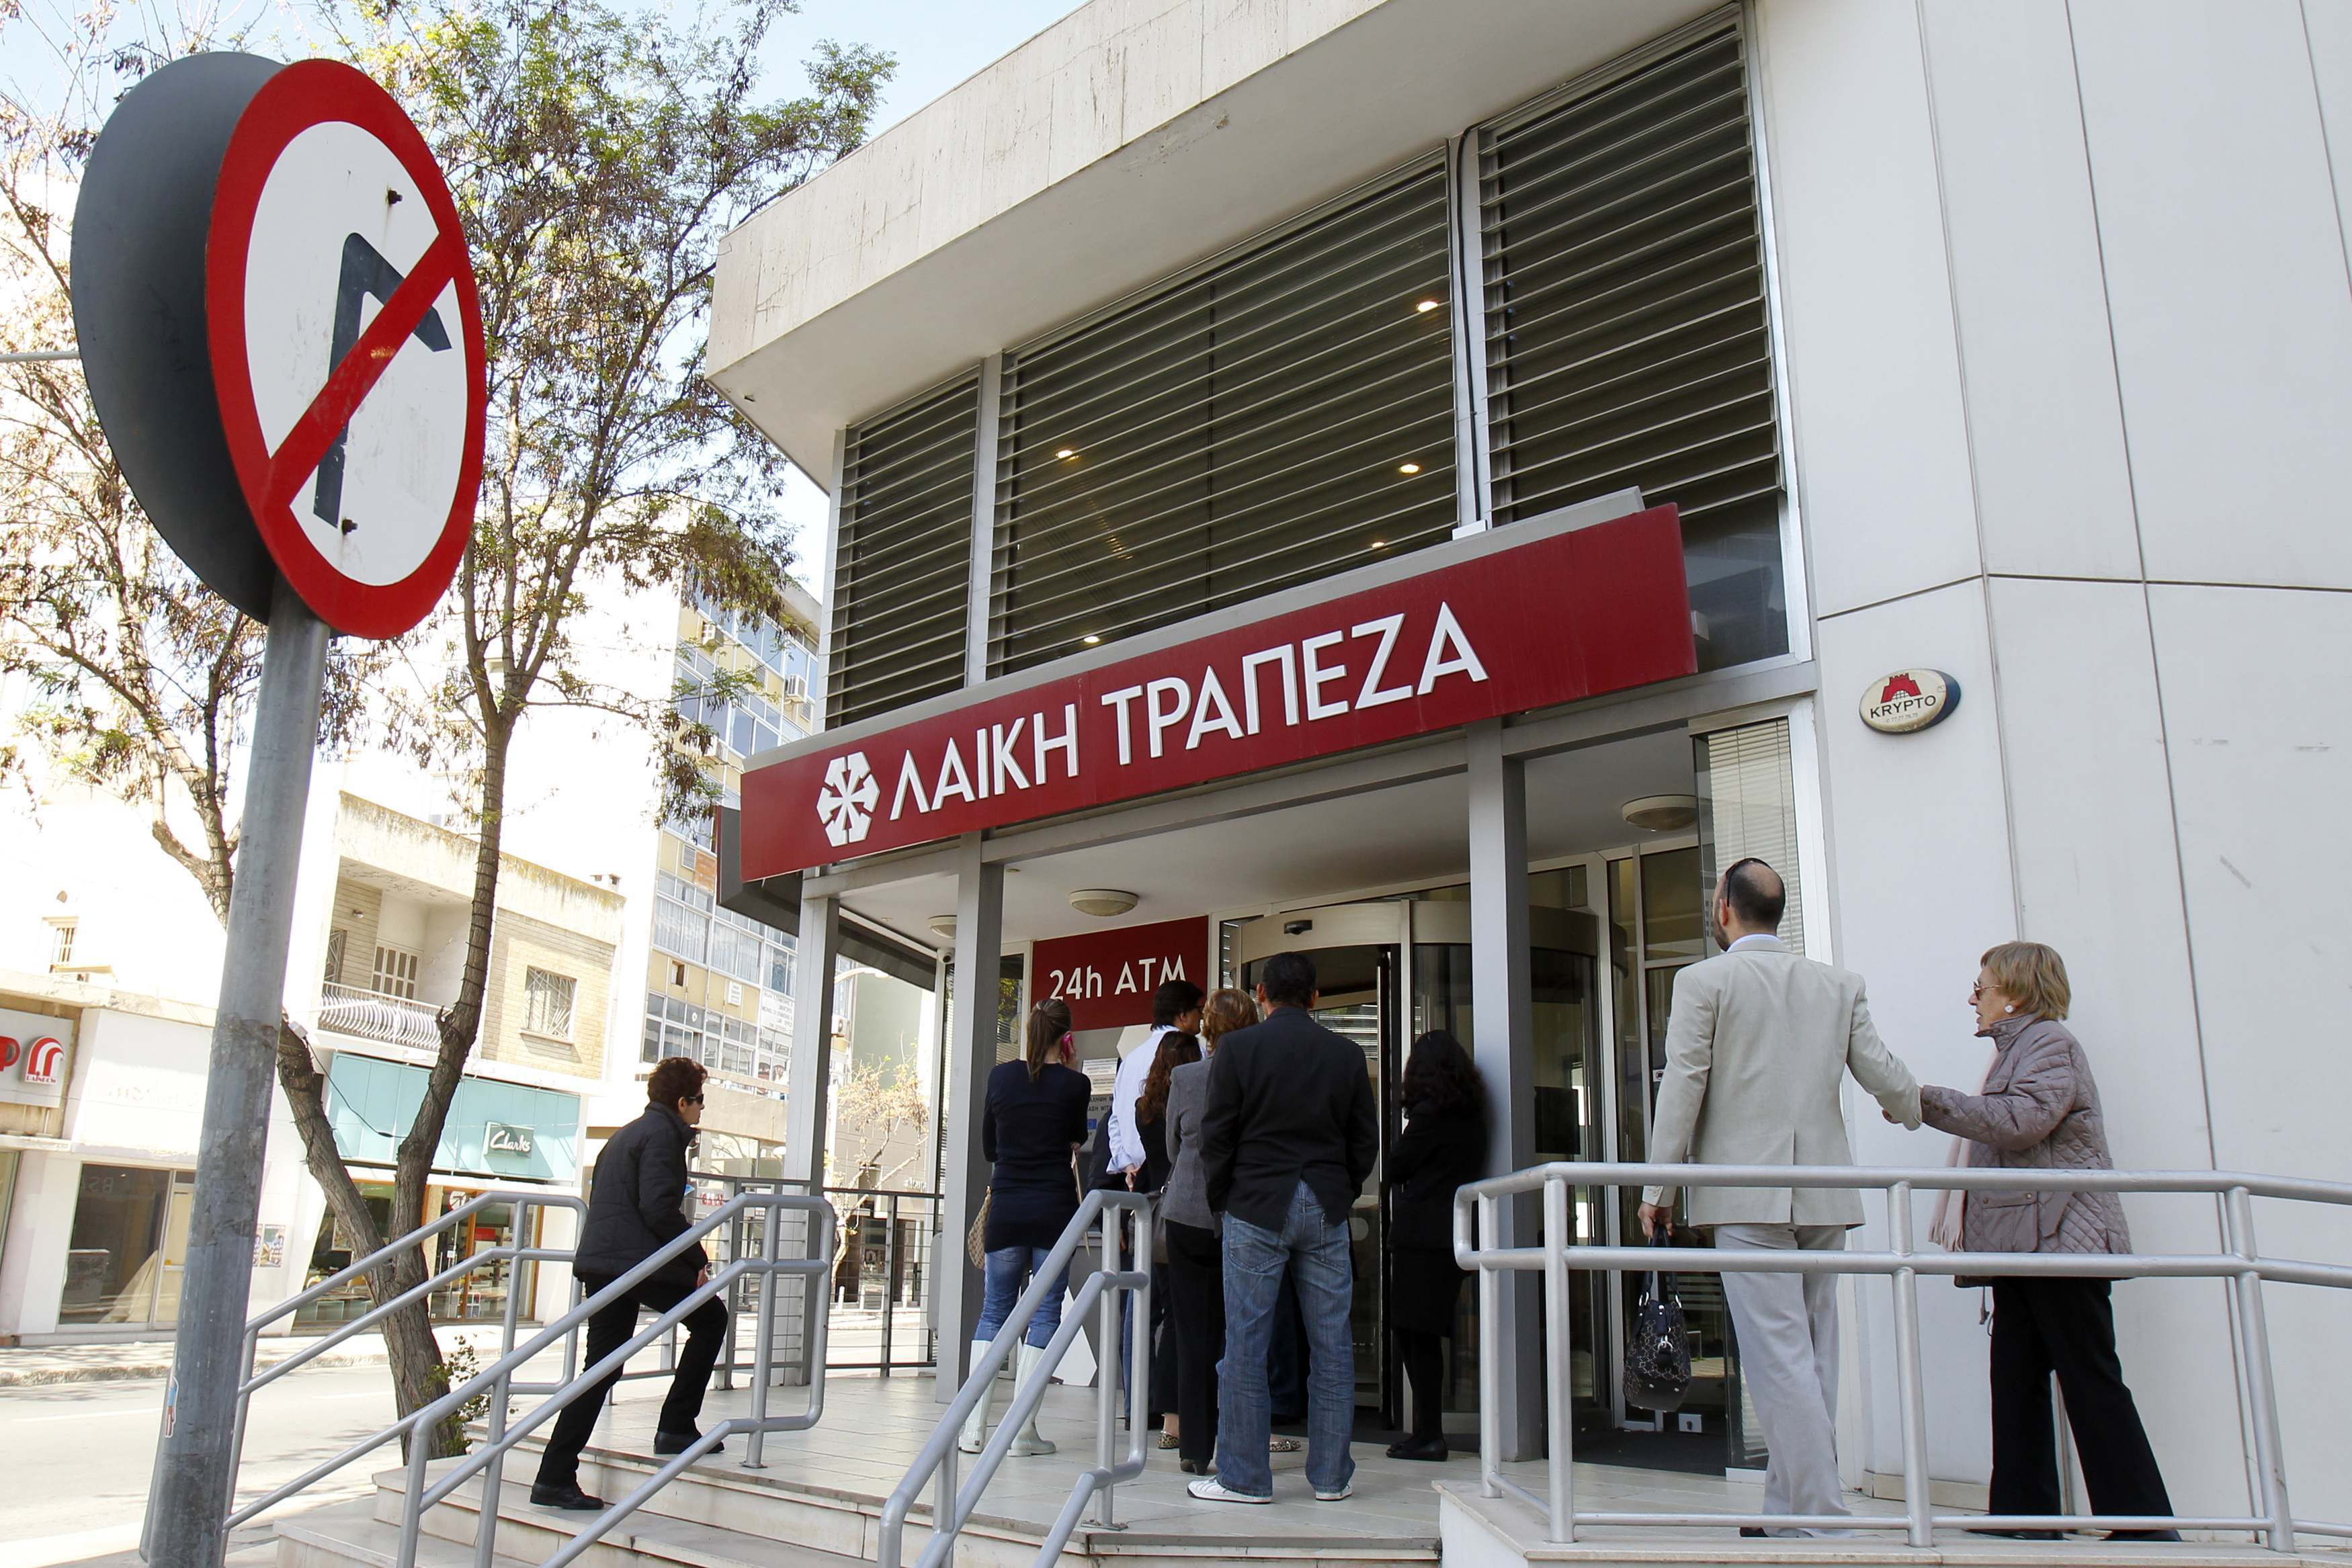 Κύπρος: Για άλλες 5 ημέρες τα περιοριστικά μέτρα στις τράπεζες